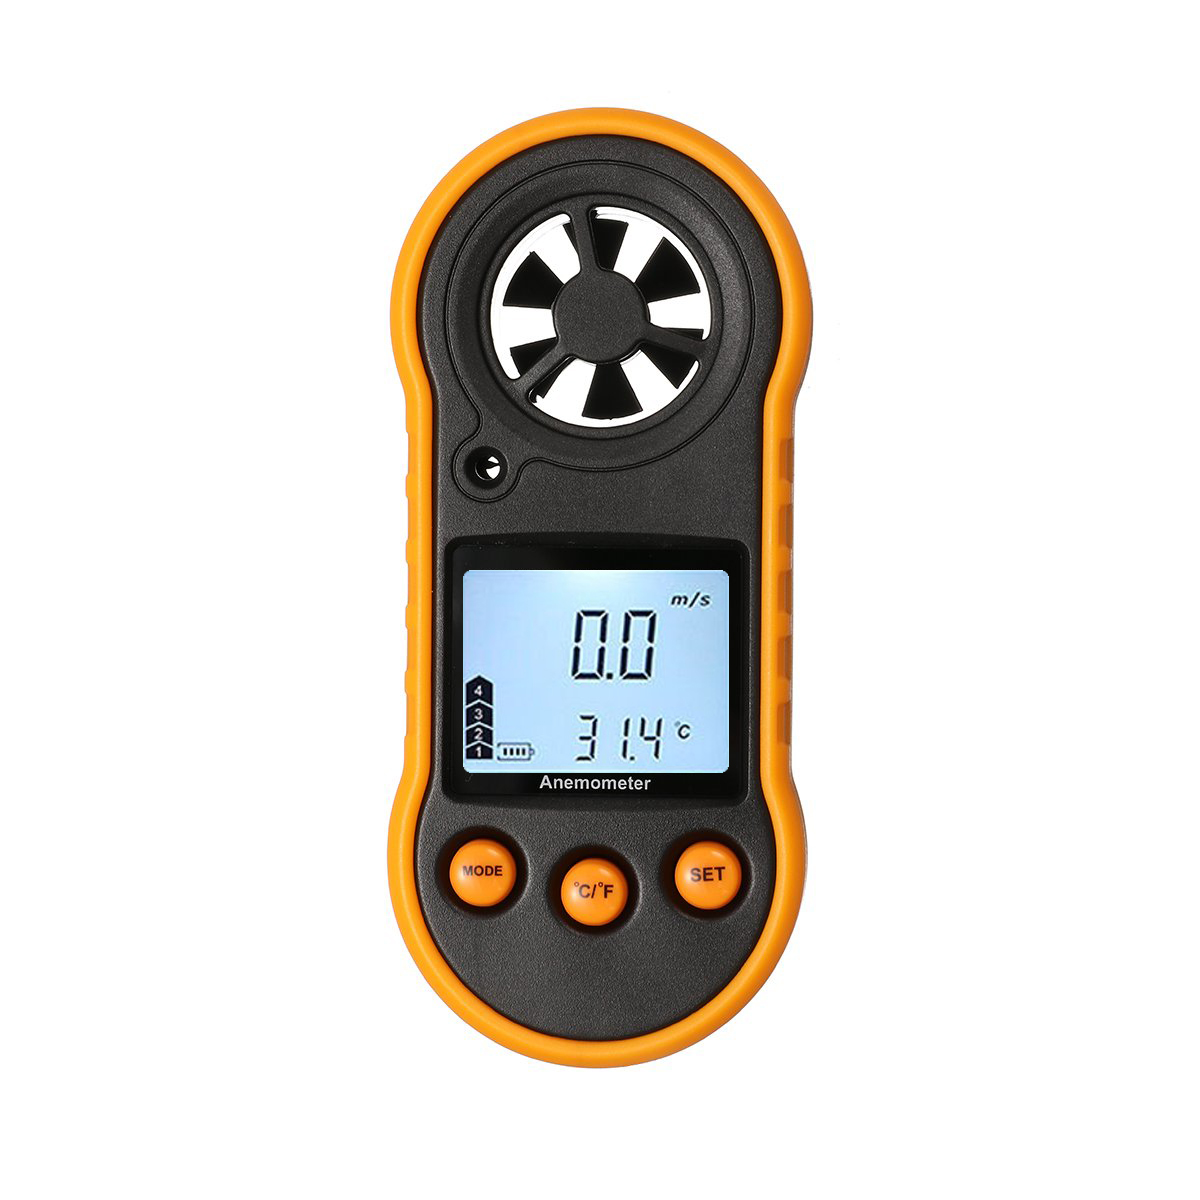 

Digital LCD Handheld Anemometer Air Wind Speed Meter Tester Temperature Gauge 0 to 30m/s